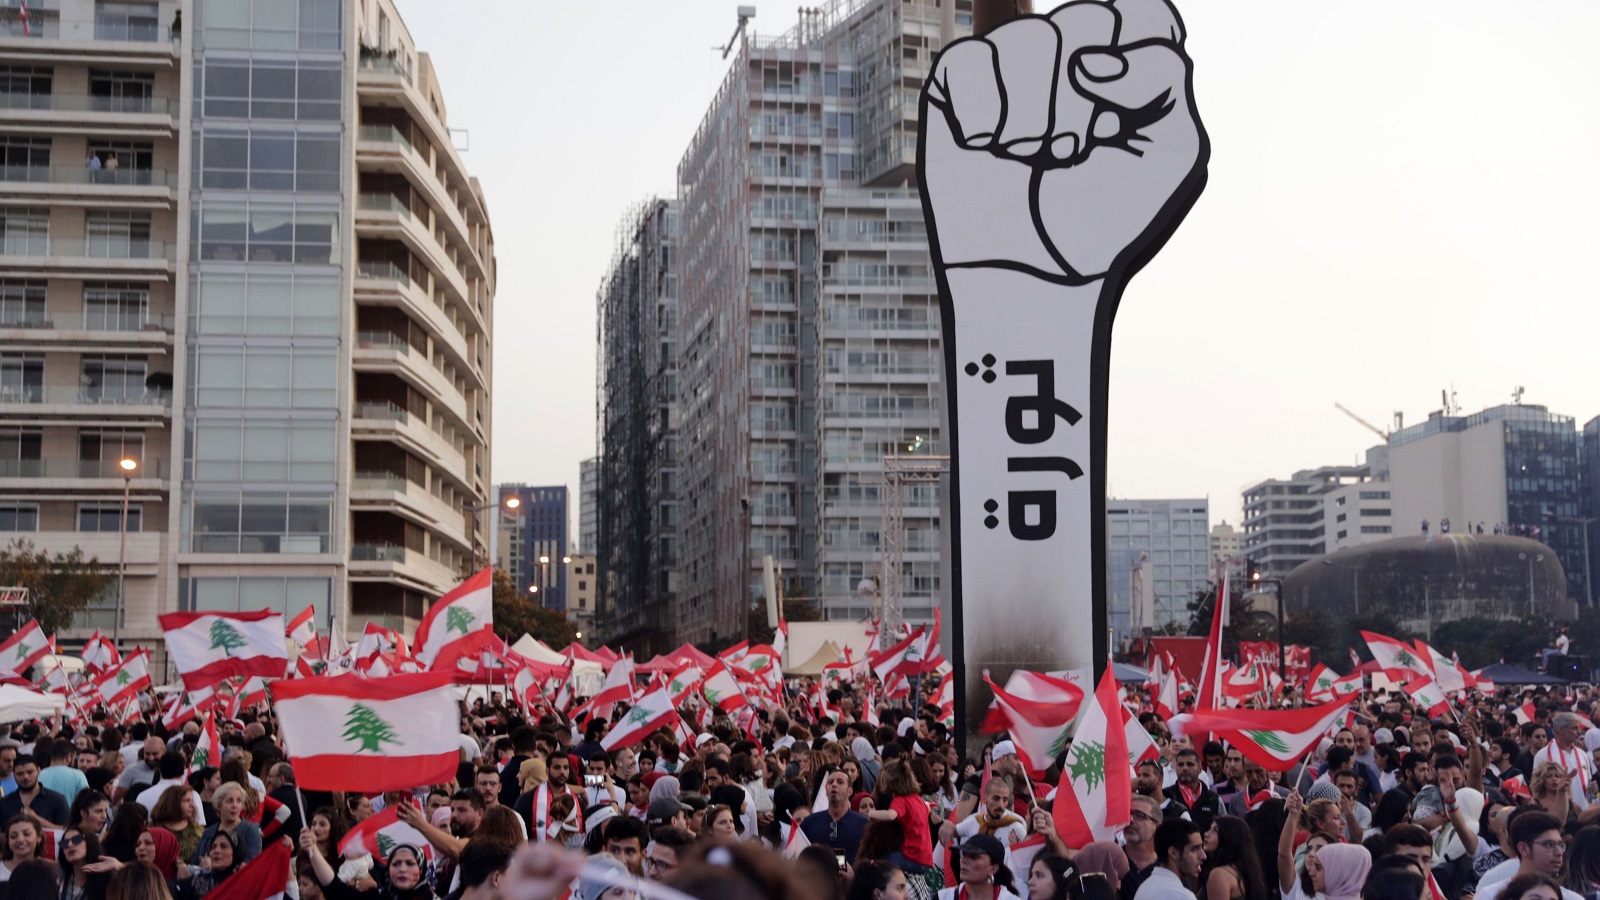 قبضة الثورة تنتصب في ساحات مدن ومناطق لبنانية